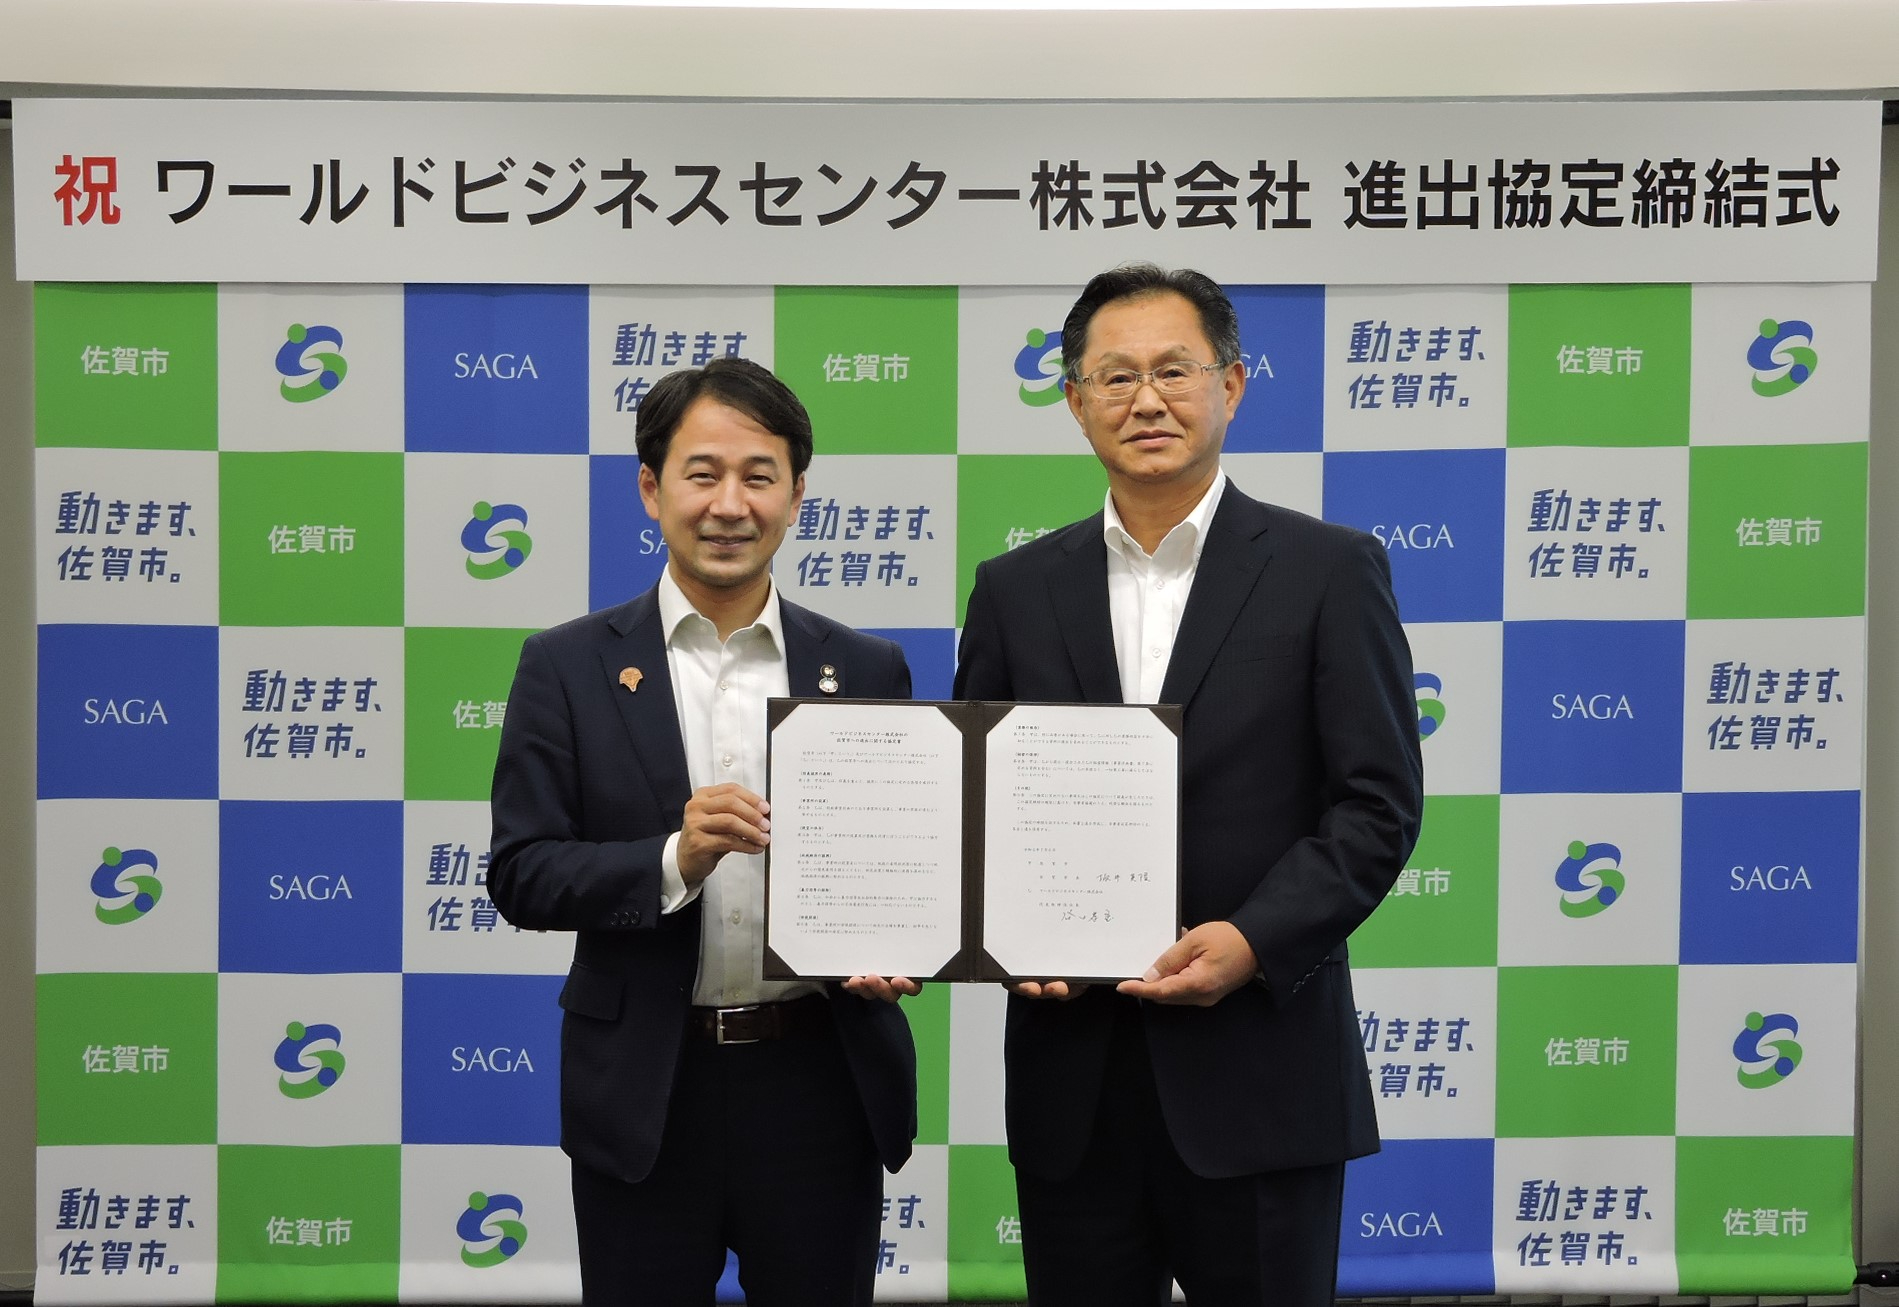 ワールドビジネスセンター株式会社と佐賀市が進出協定を締結されました